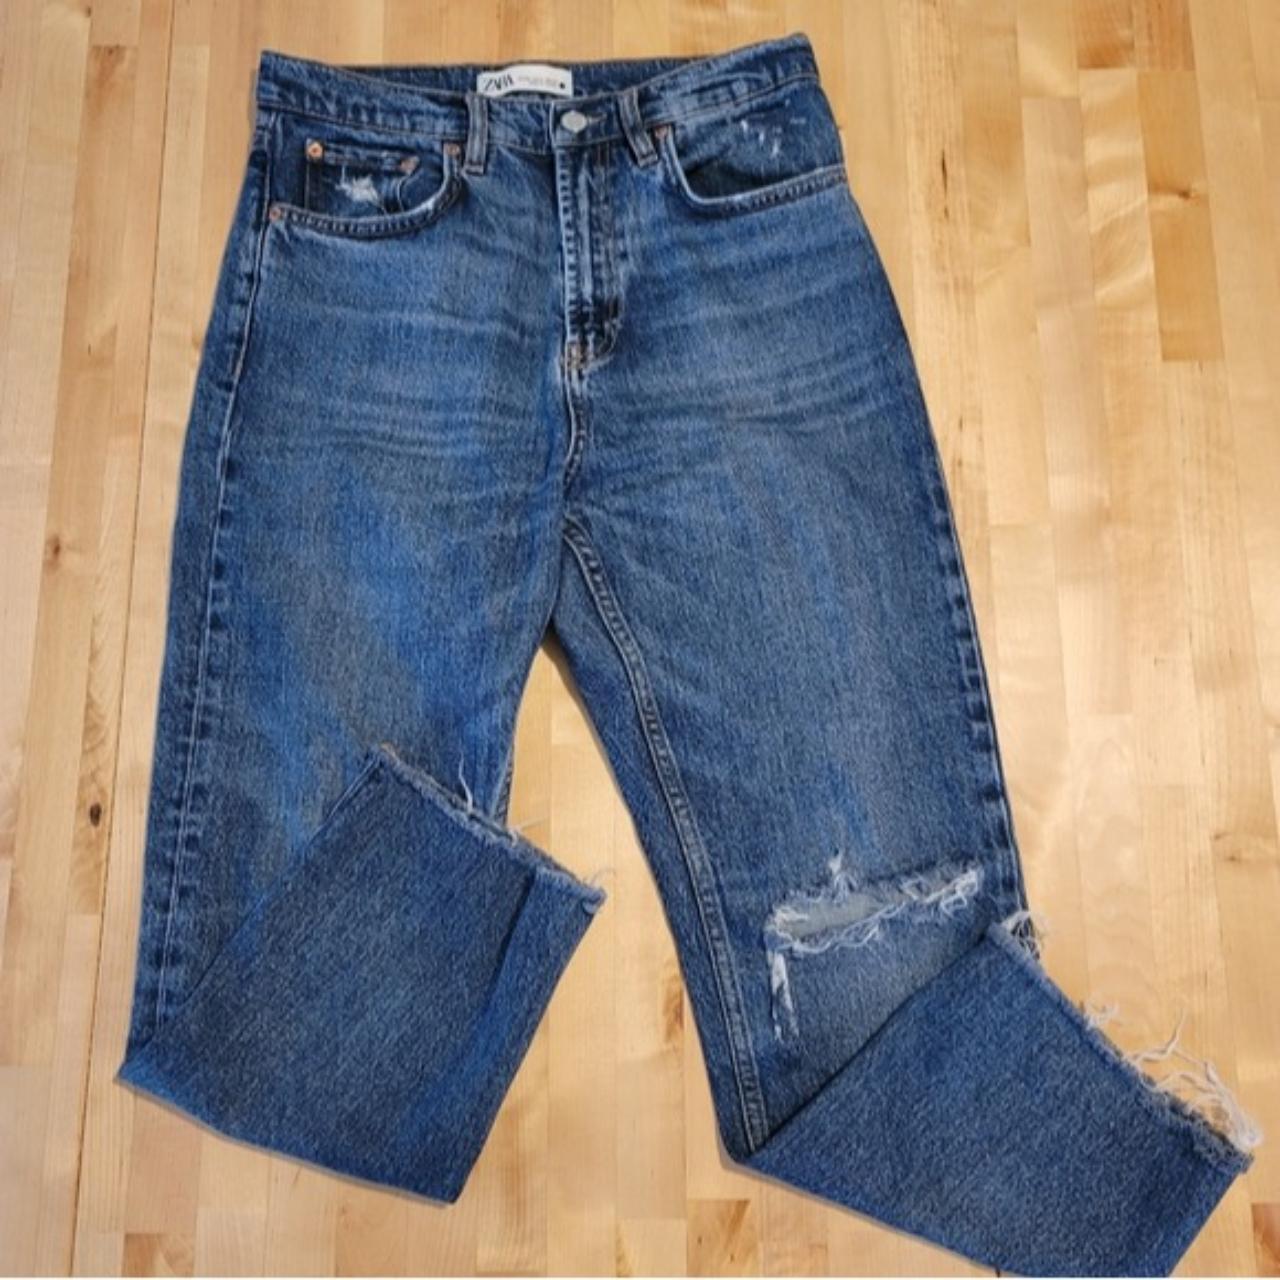 Zara High-Waisted Kick Crop Jeans Size 4, GUC,... - Depop